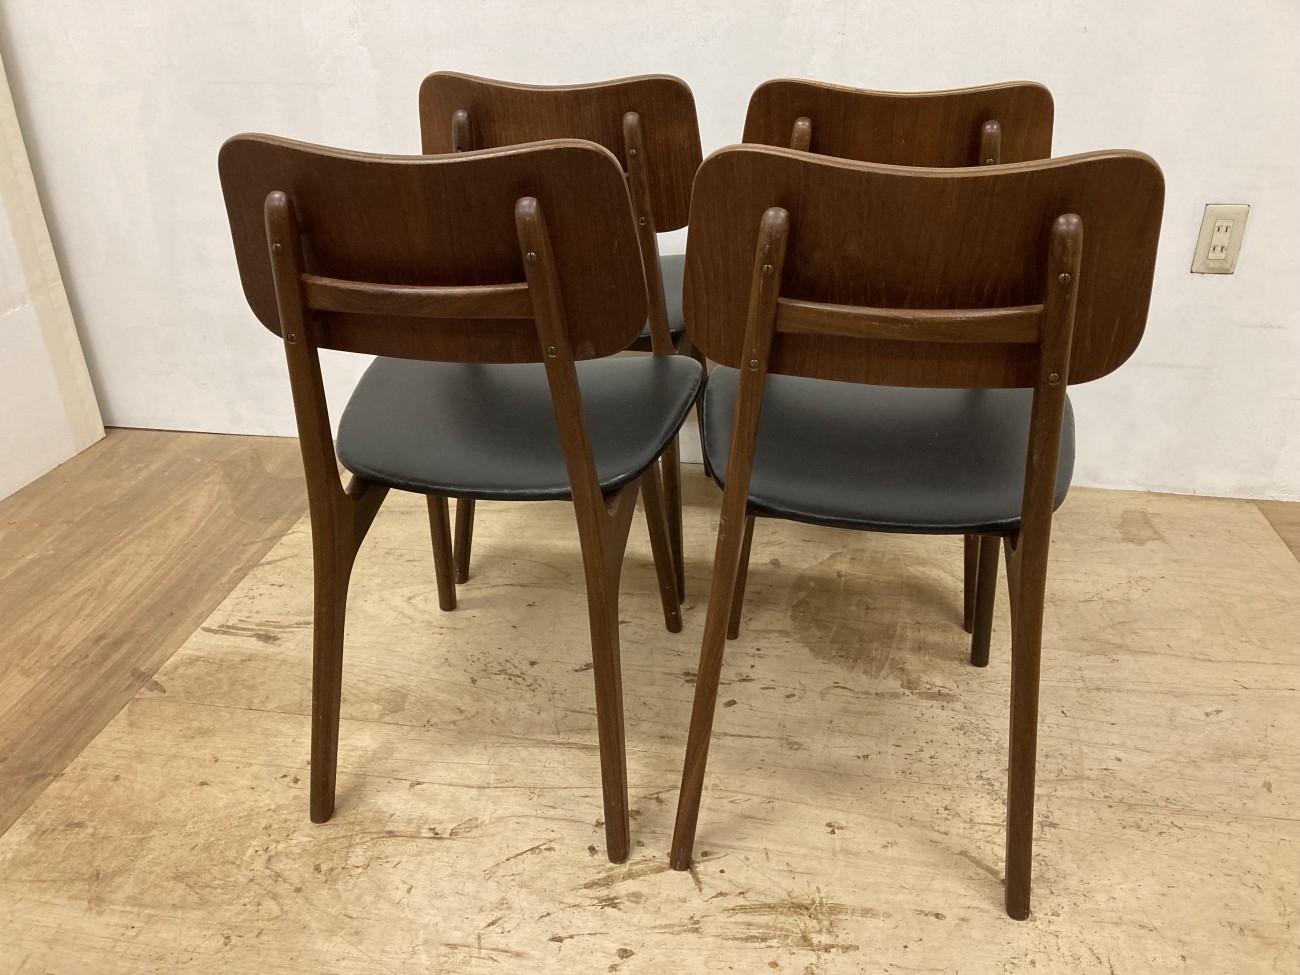 Ib Kofod Larsen dining chair 2or4p set / イヴ・コフォード